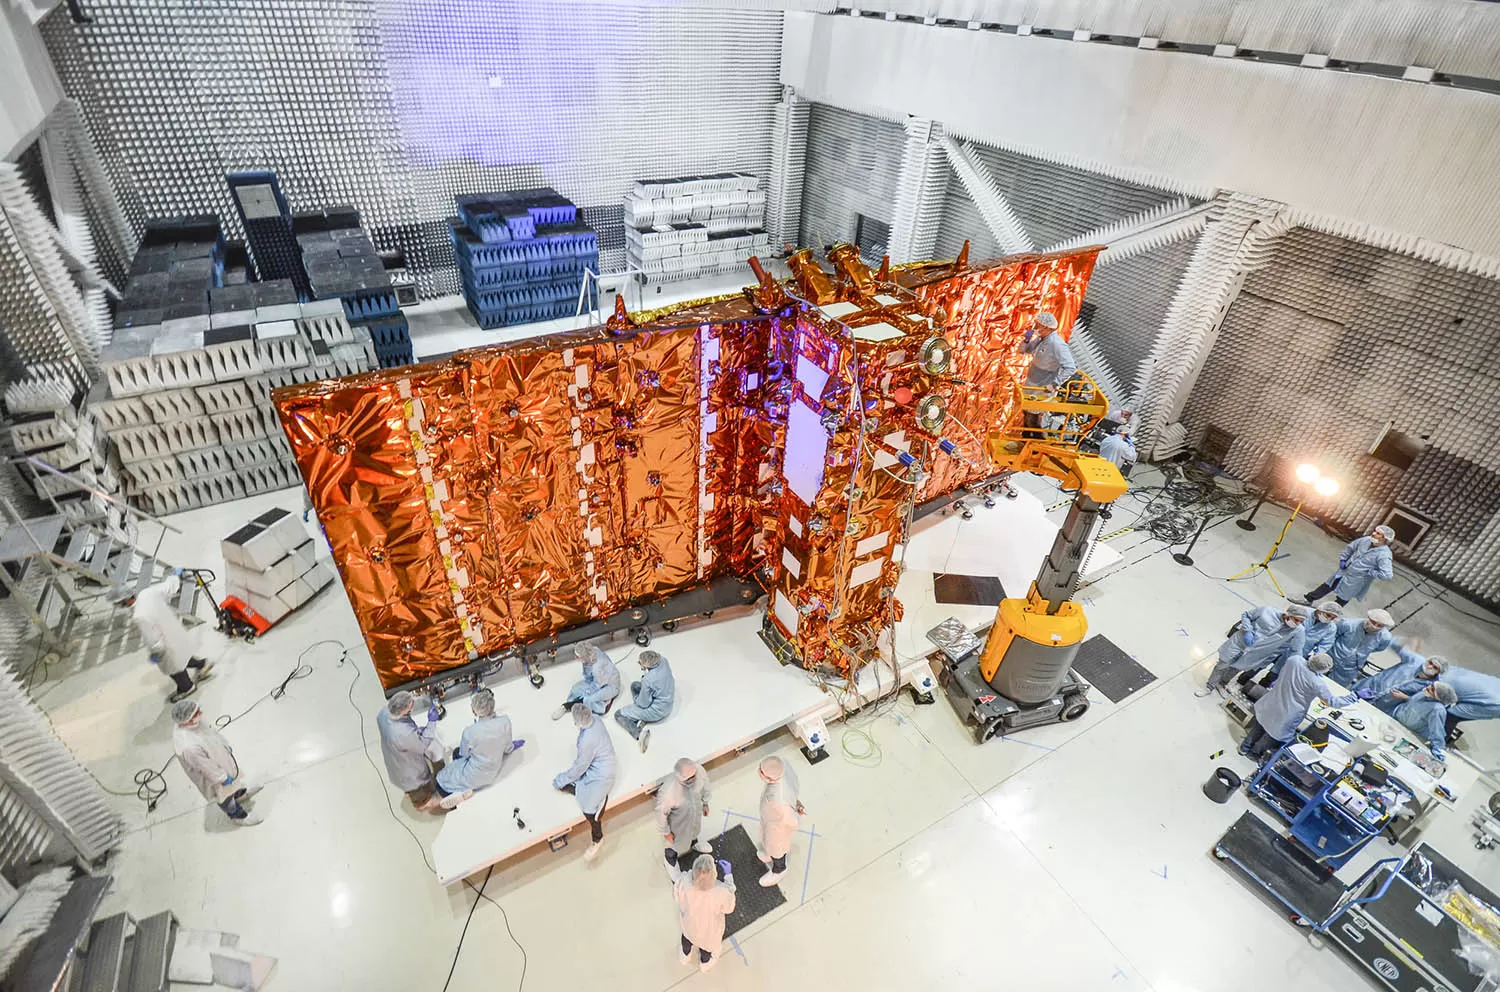   El satélite Saocom 1B recargó las baterías después de tres meses y medio de inactividad